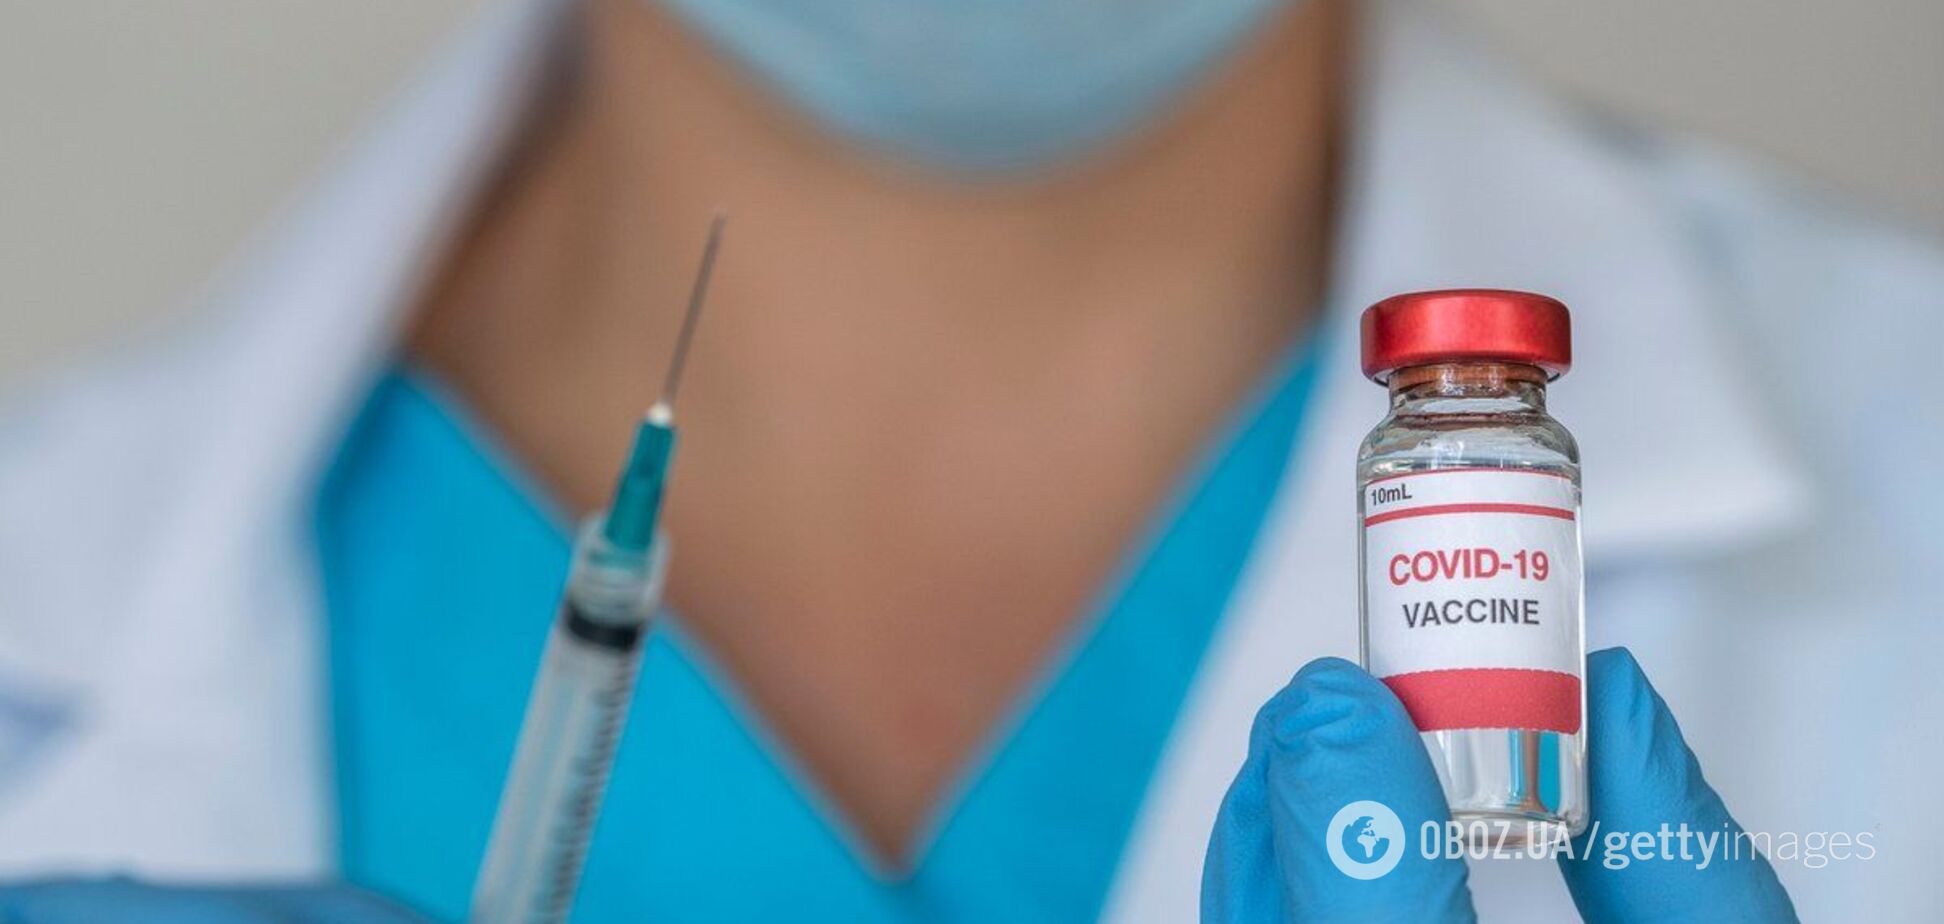 ЕС может одобрить вакцину от COVID-19 до Нового года